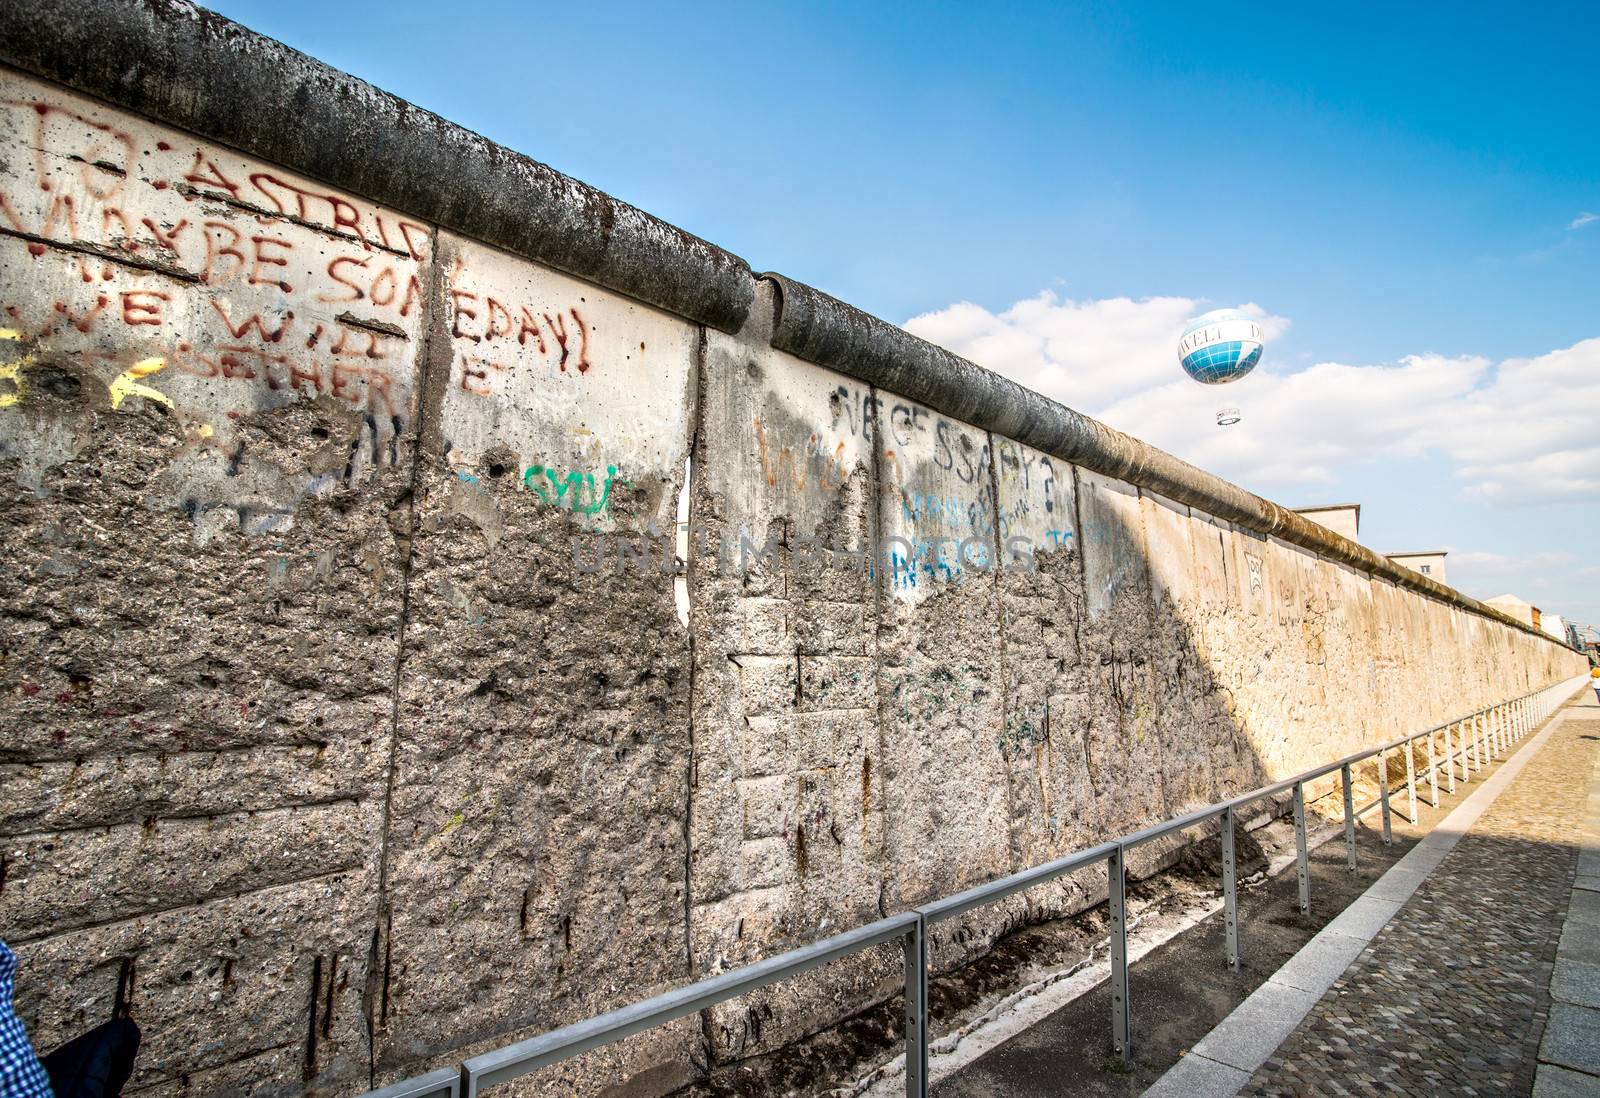 Berlin Wall by GekaSkr